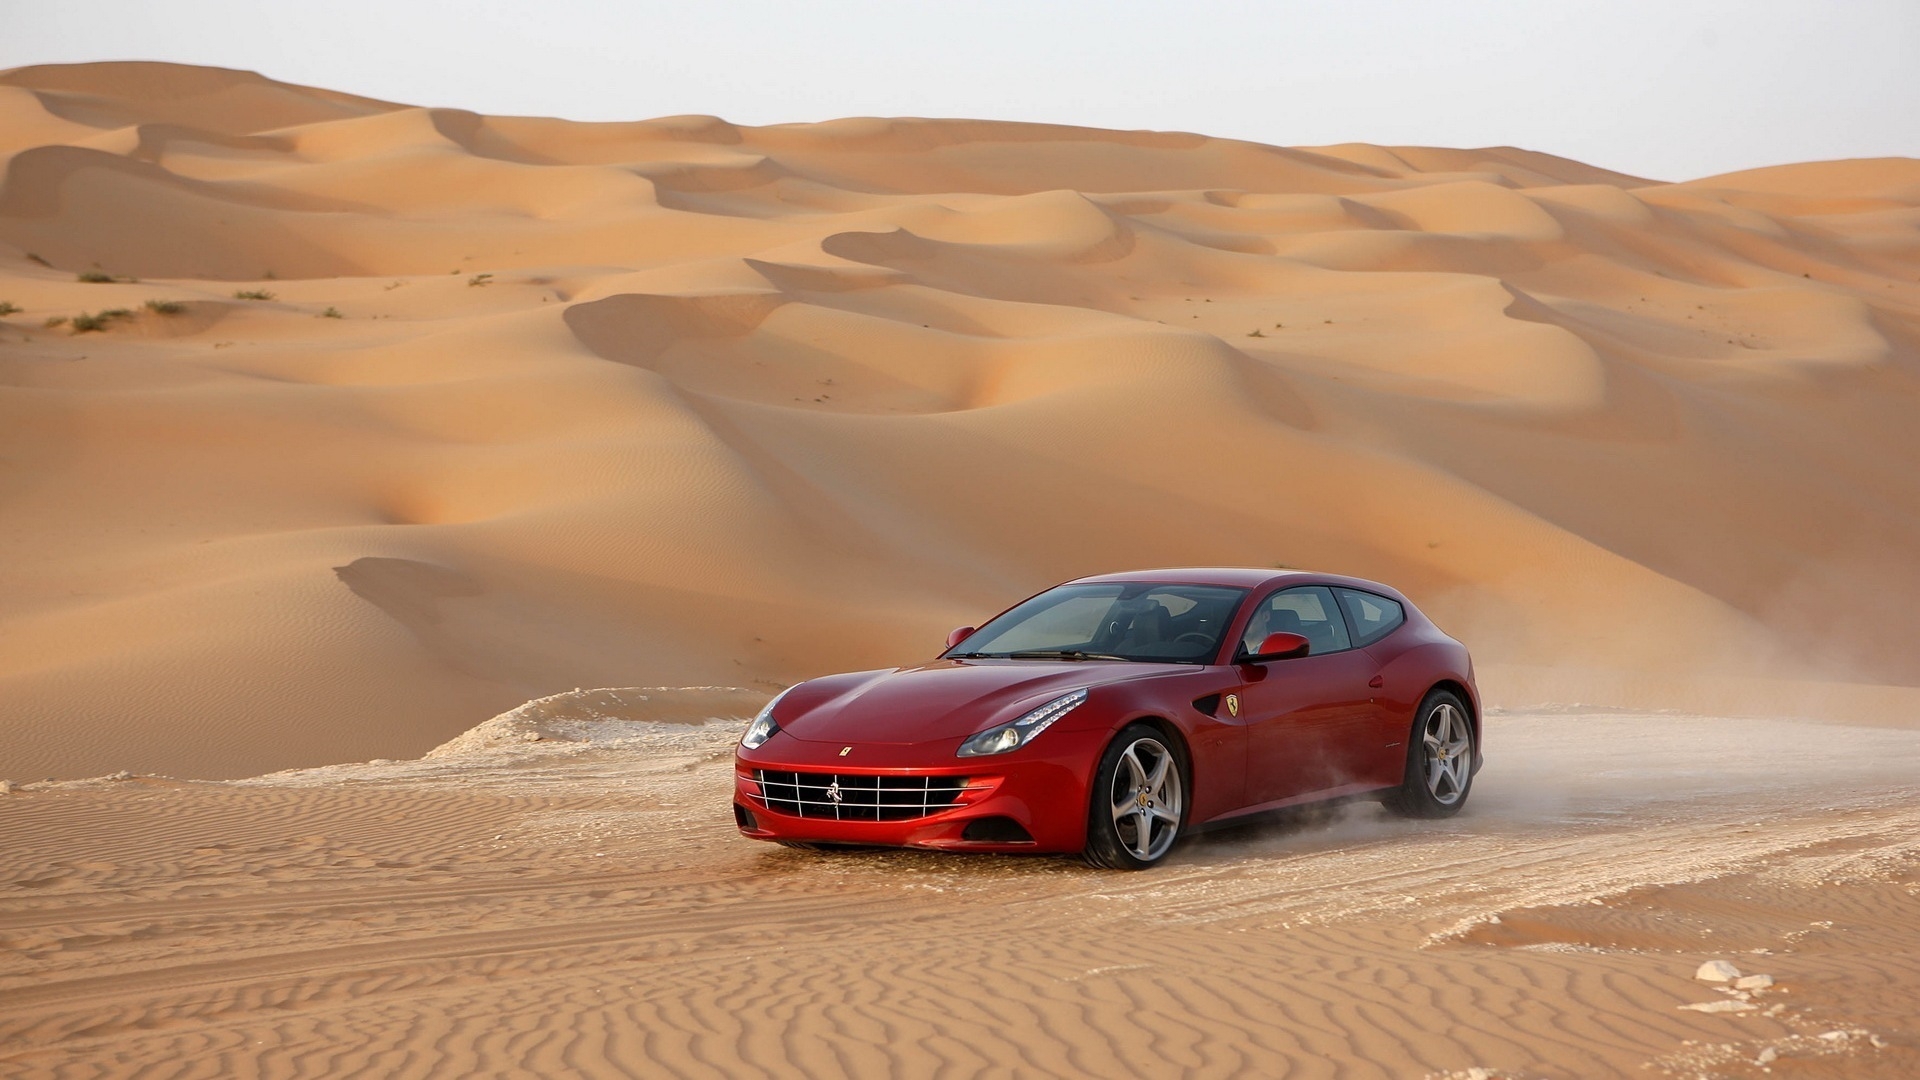 Download mobile wallpaper Transport, Auto, Ferrari for free.